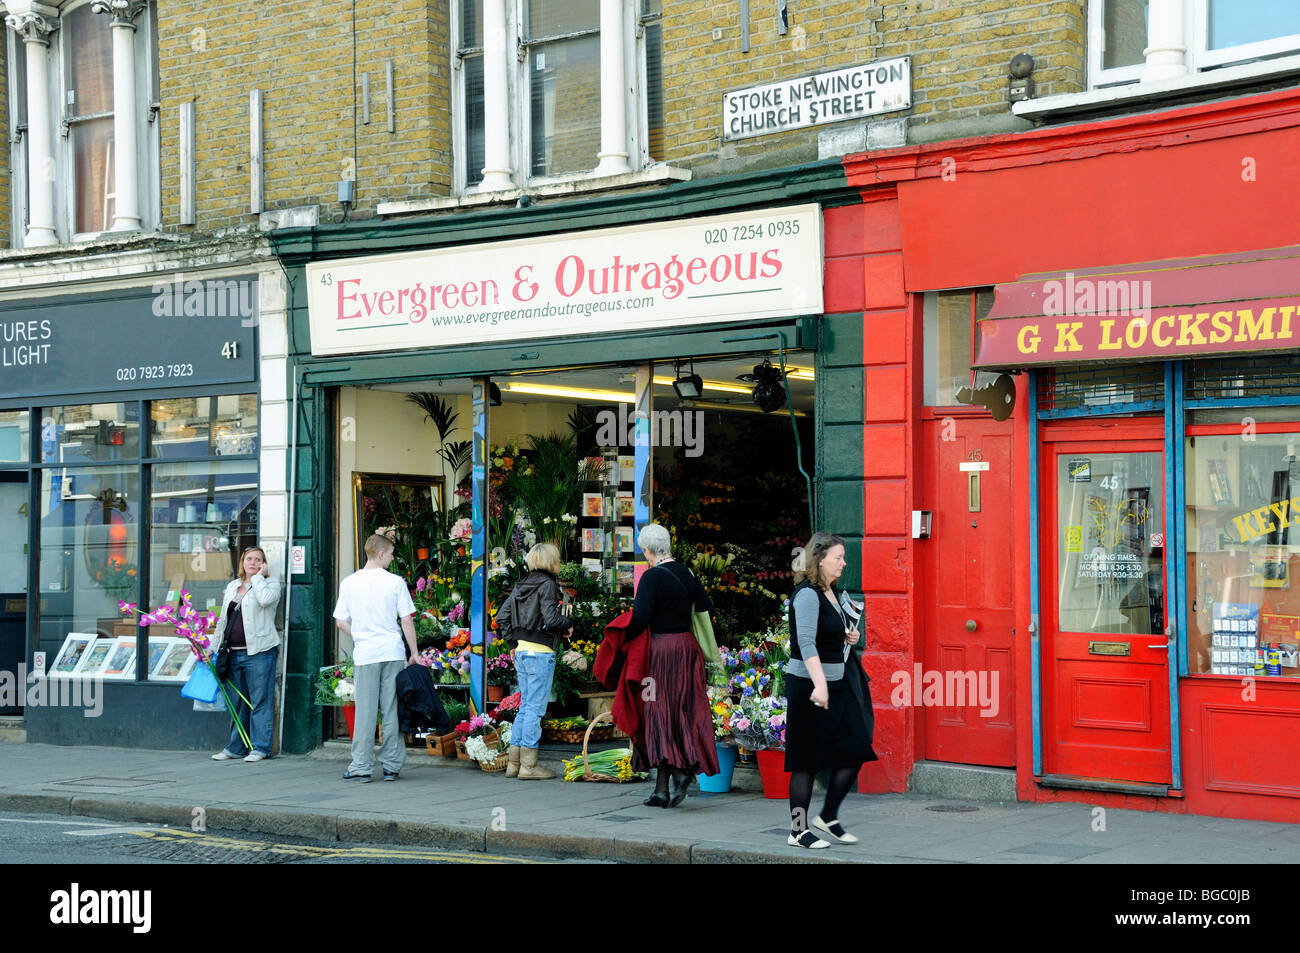 Persone nella parte anteriore del negozio di fiori "Evergreen & Outrageous' Stoke Newington Church Street a Londra England Regno Unito Foto Stock